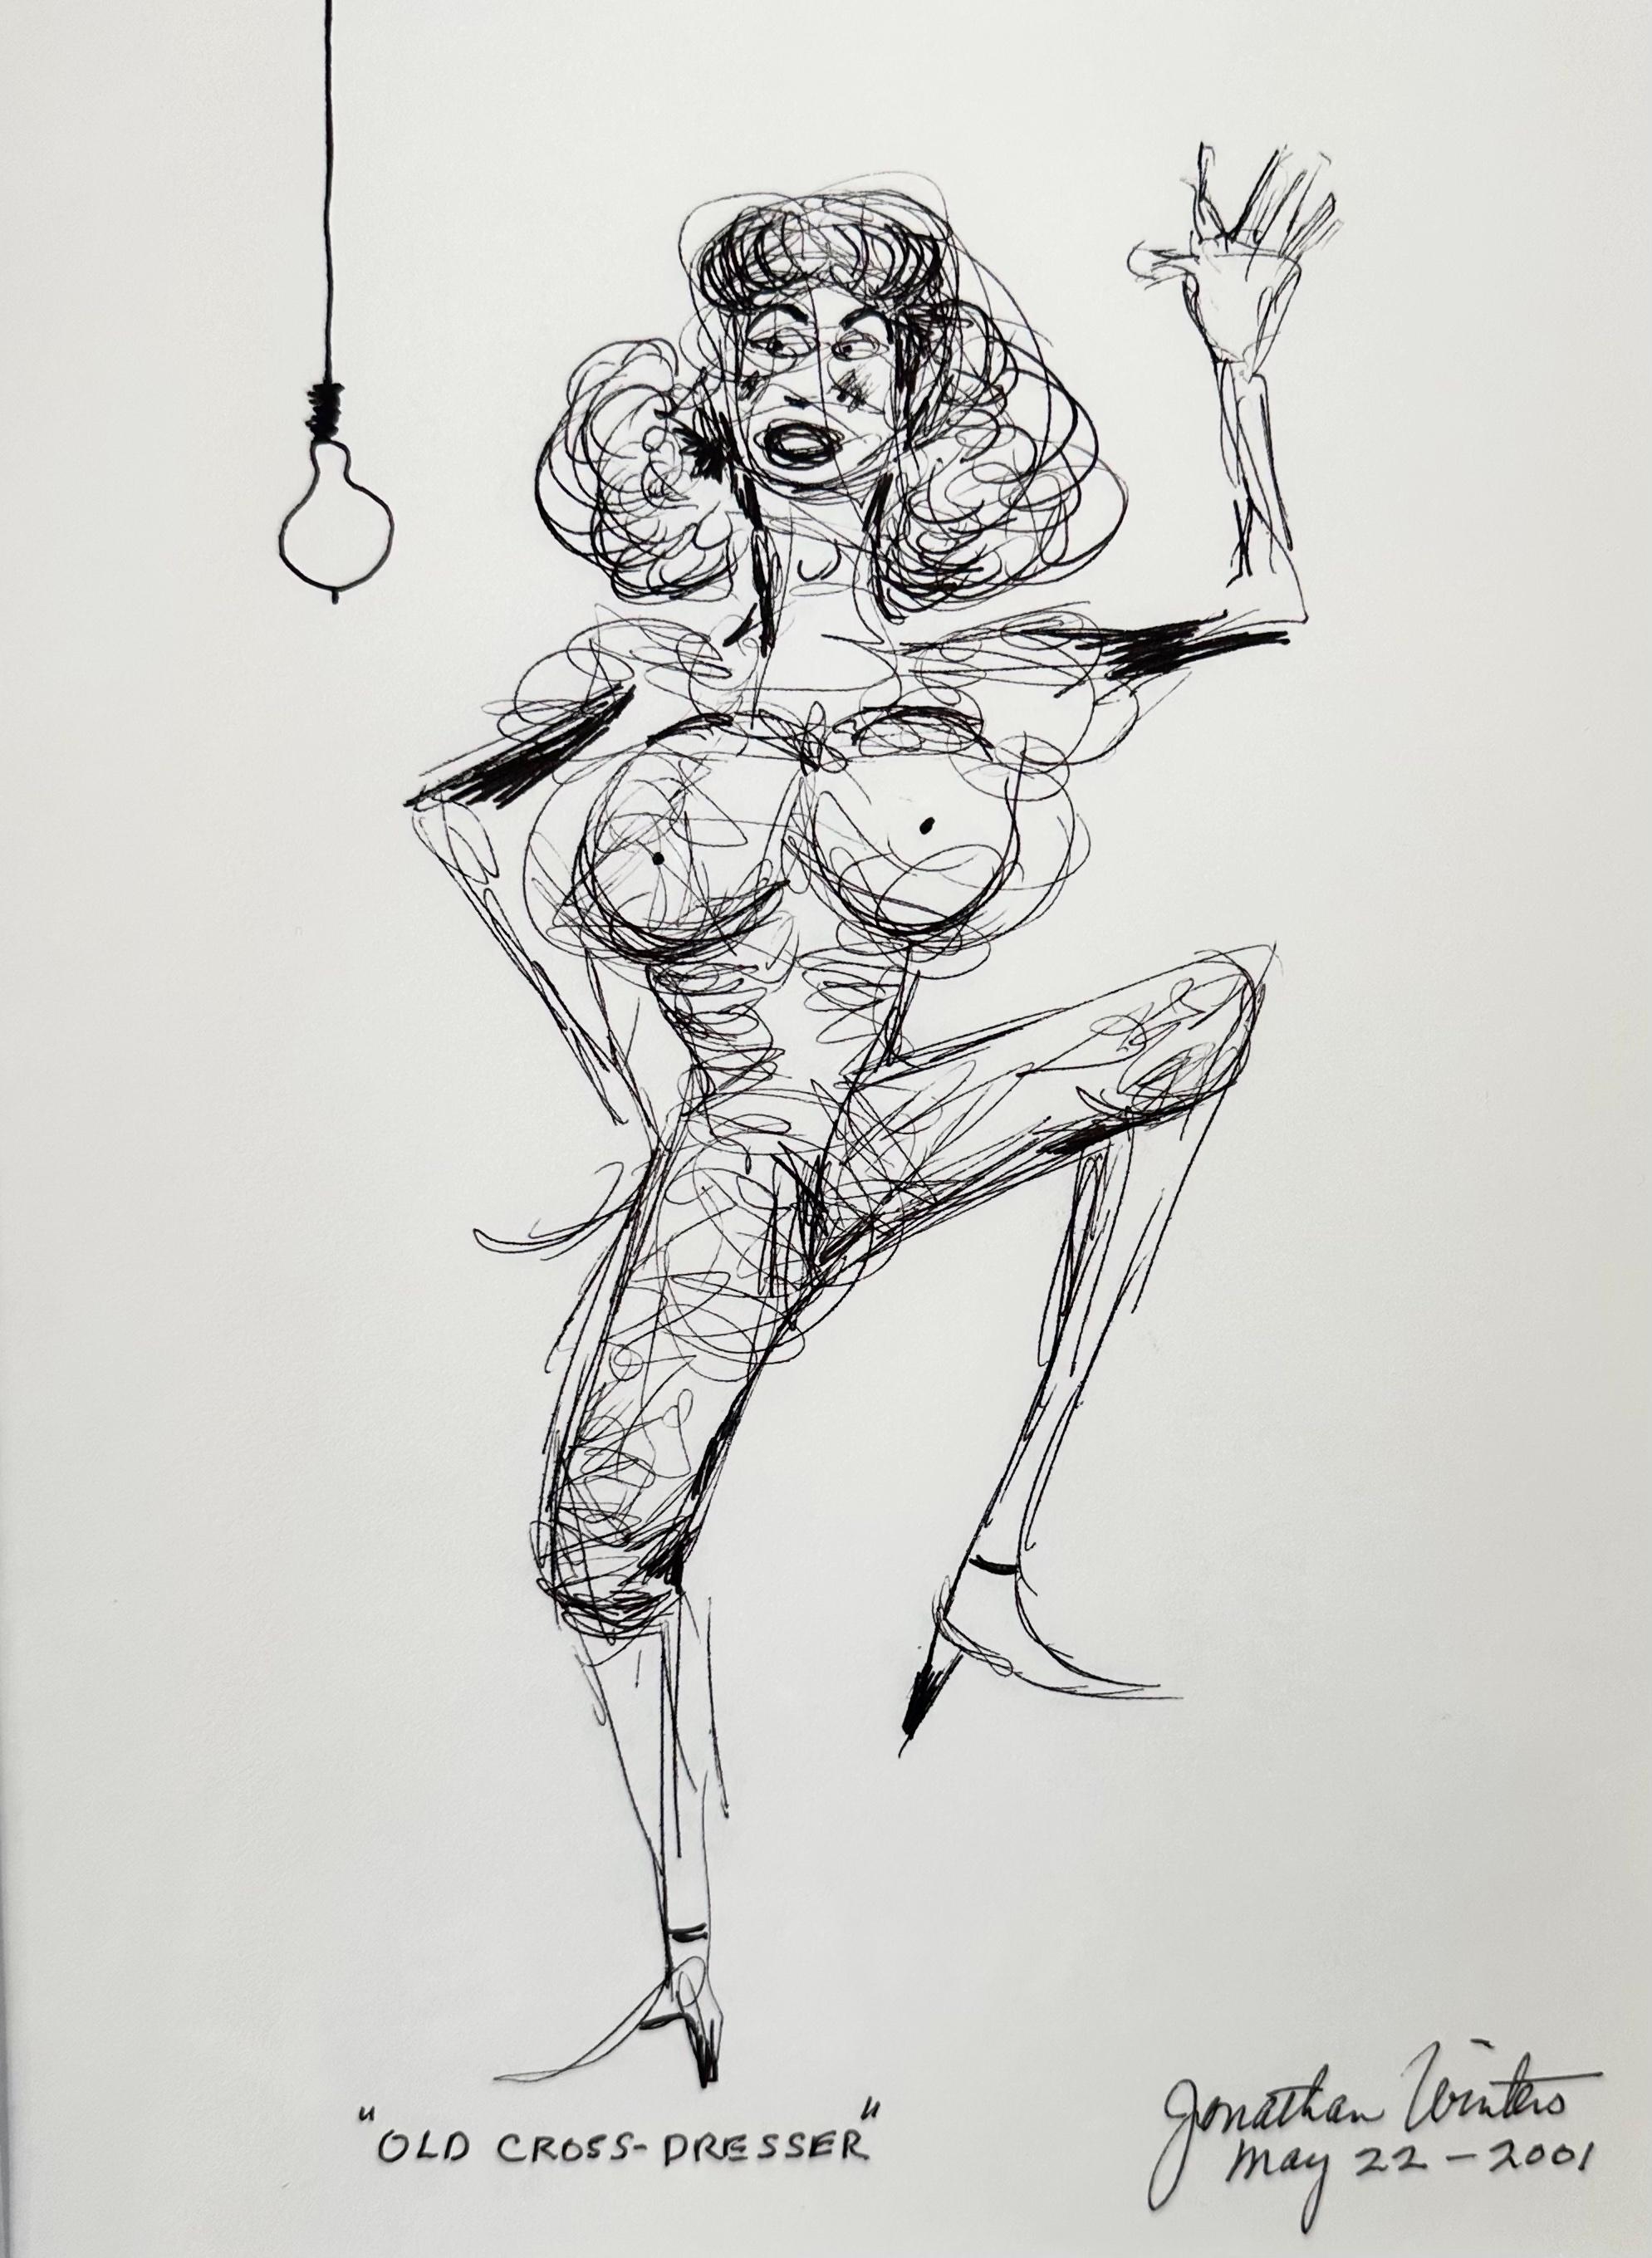 Dieses Werk ist eine einzigartige Zeichnung, die Jonathan Winters 2001 mit Feder und Tinte angefertigt hat. Es ist handschriftlich signiert und datiert: "22. Mai 2001". Winters war ein berühmter amerikanischer Komiker, Schauspieler, Autor,